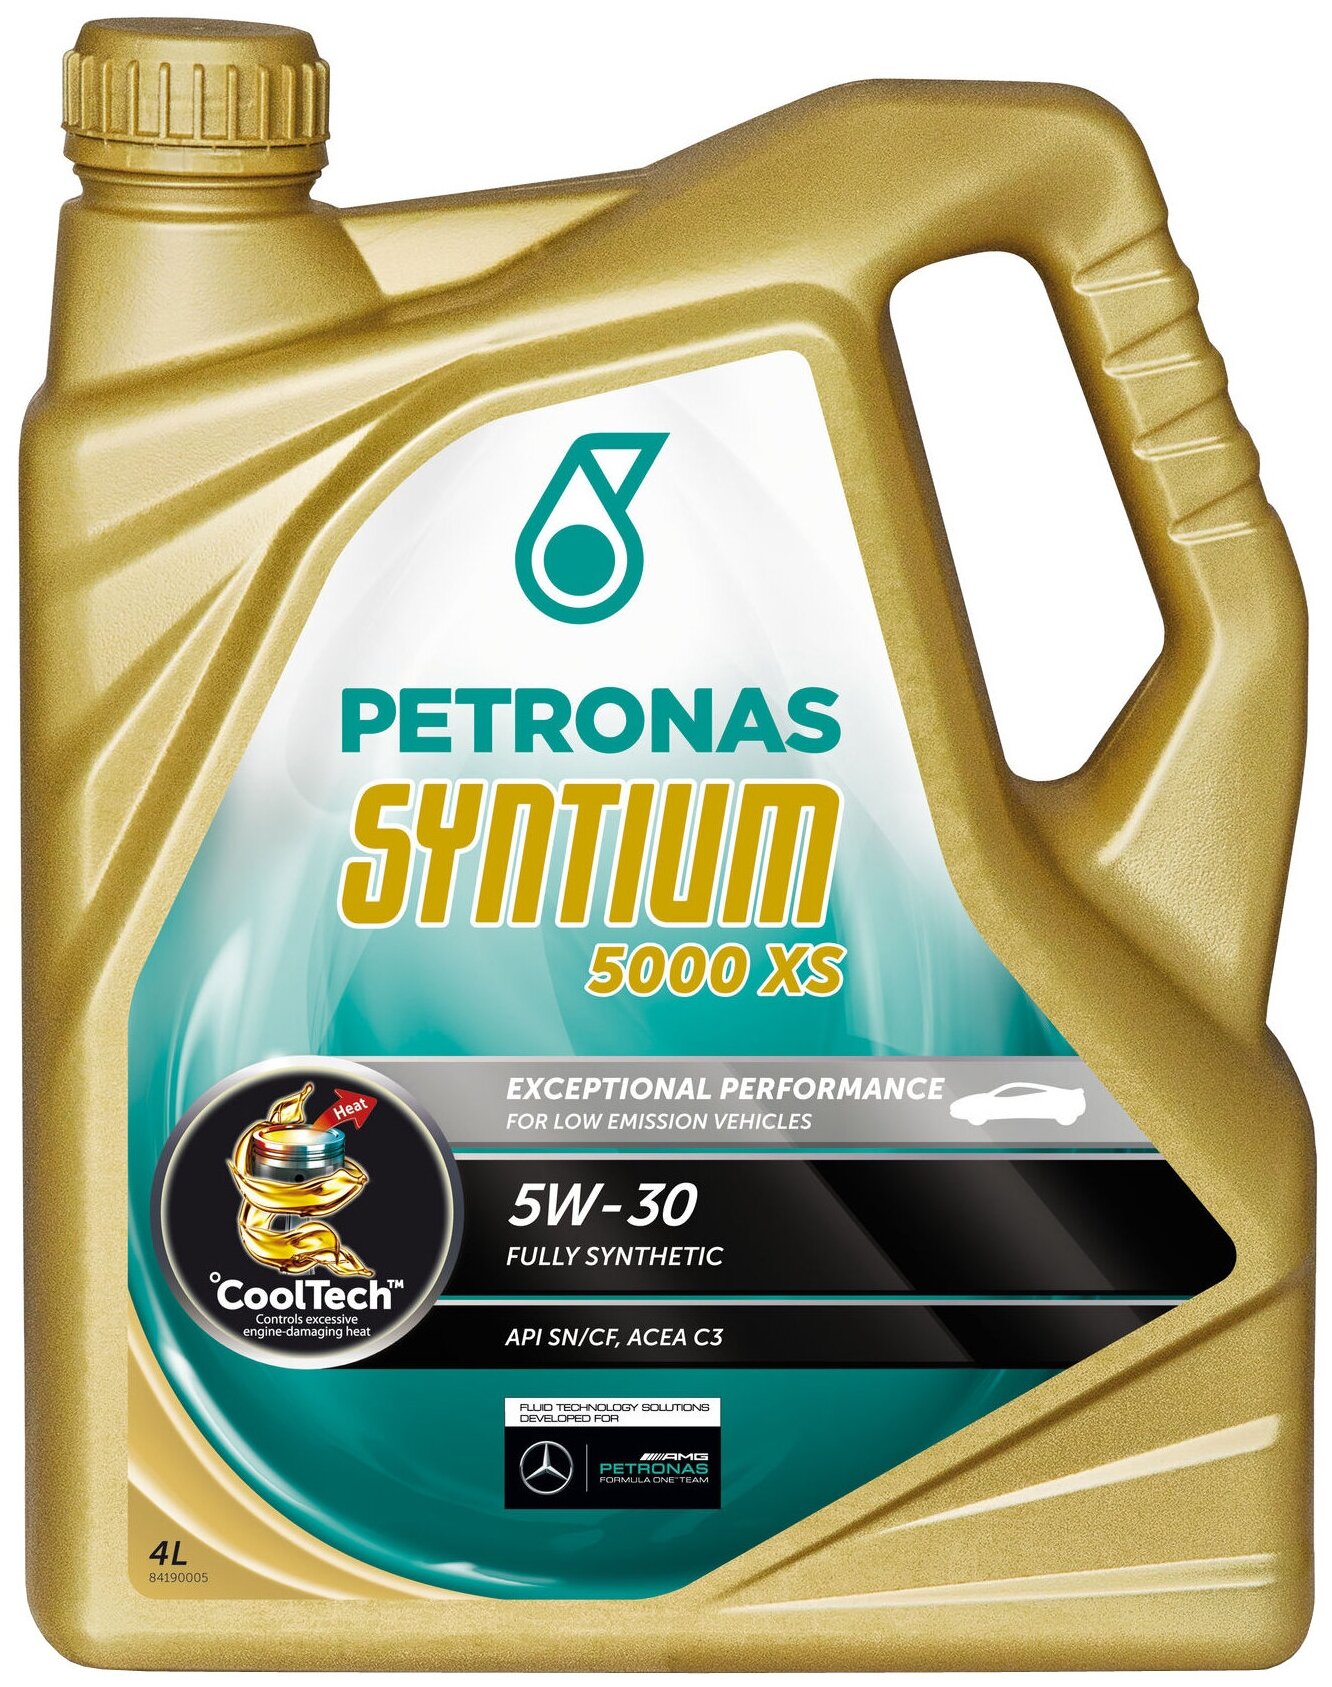 Синтетическое моторное масло Petronas Syntium 5000 XS 5W30, 4 л, 3.9 л